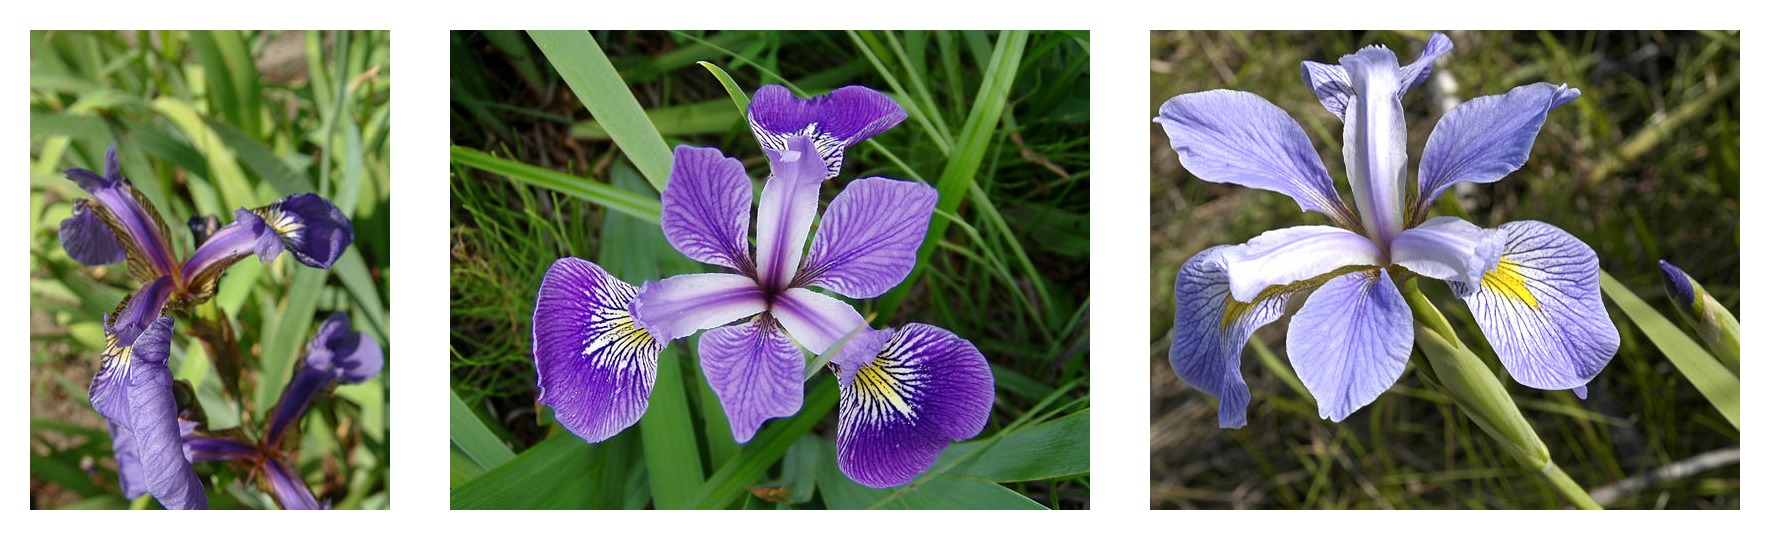 مقایسه هندسه گلبرگ برای سه گونه زنبق: زنبق ستوزا، زنبق ویرجینیکا و زنبق versicolor